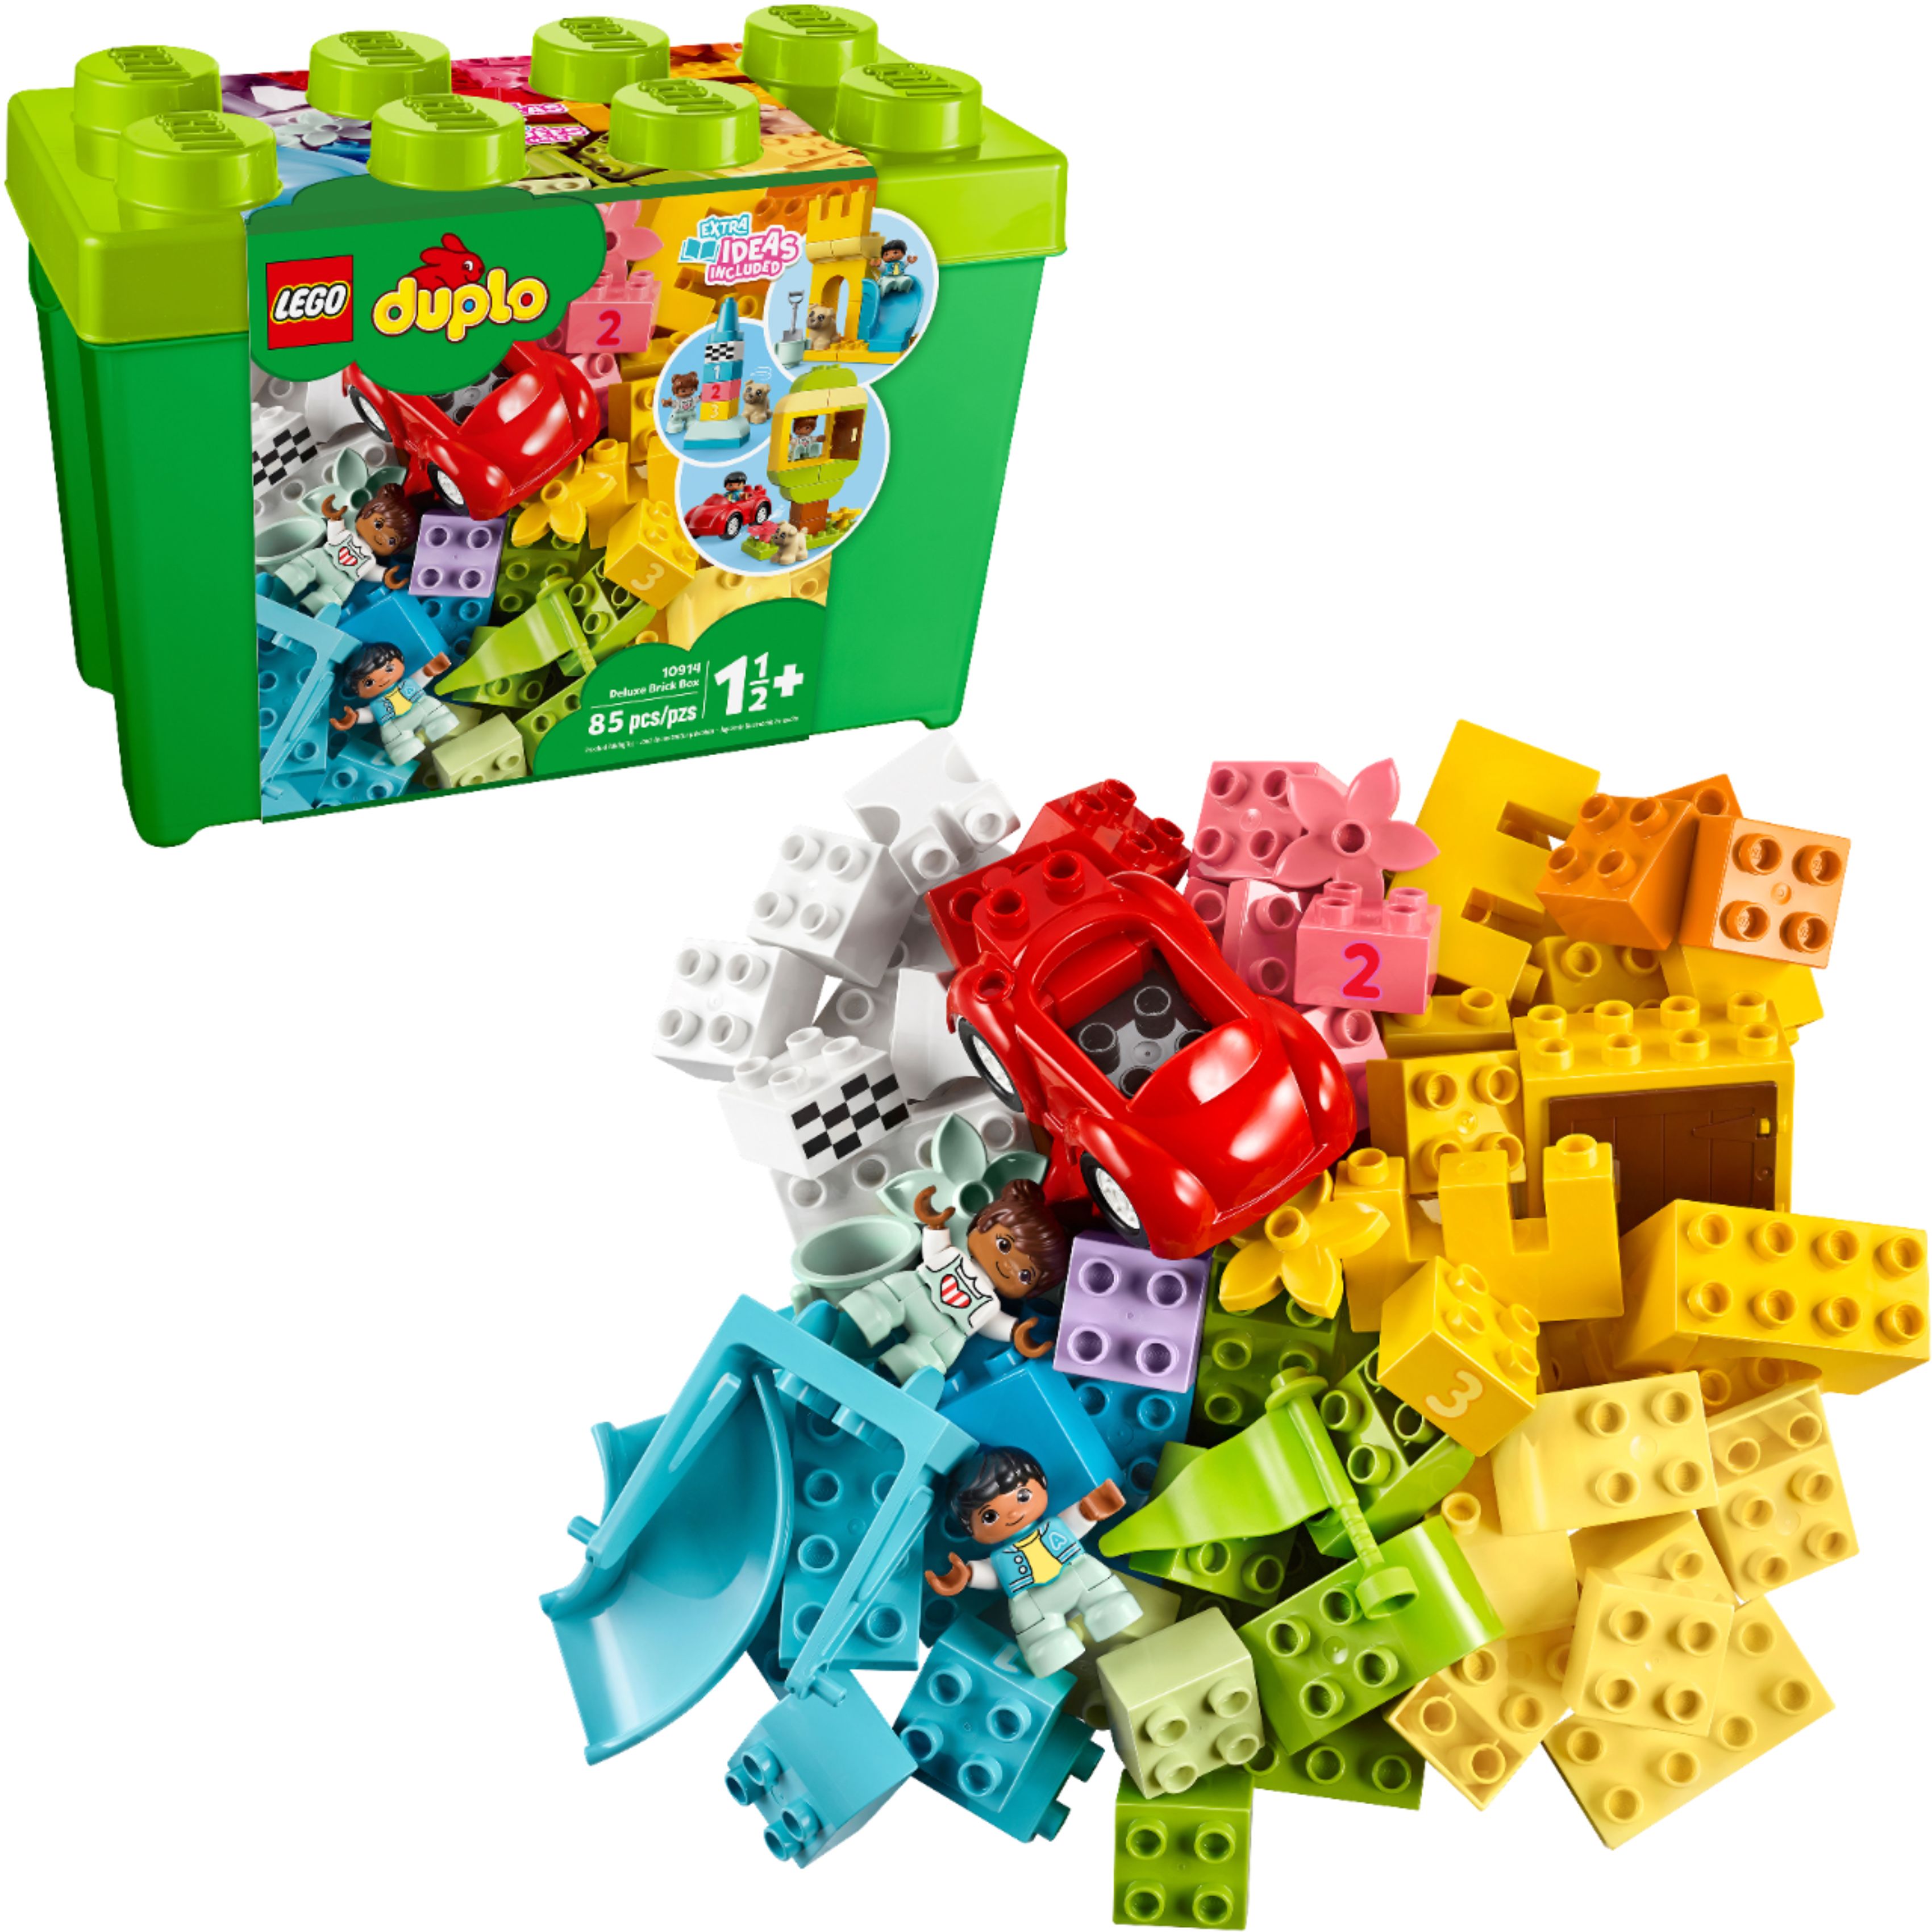 LEGO DUPLO Deluxe Brick Box 10914 - Best Buy